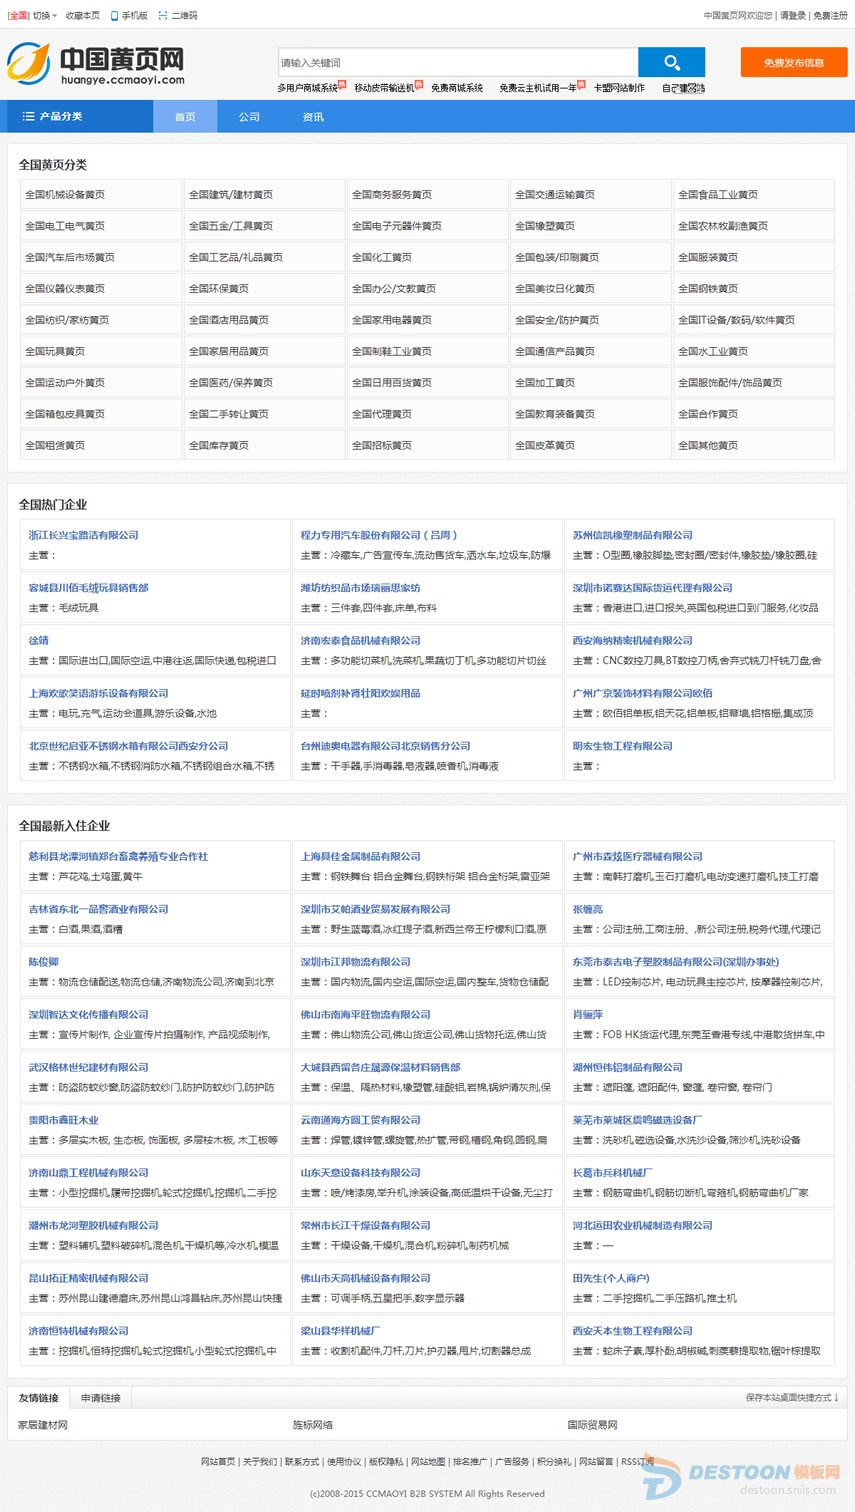 中国黄页网 全球最大的中文免费黄页信息服务网站